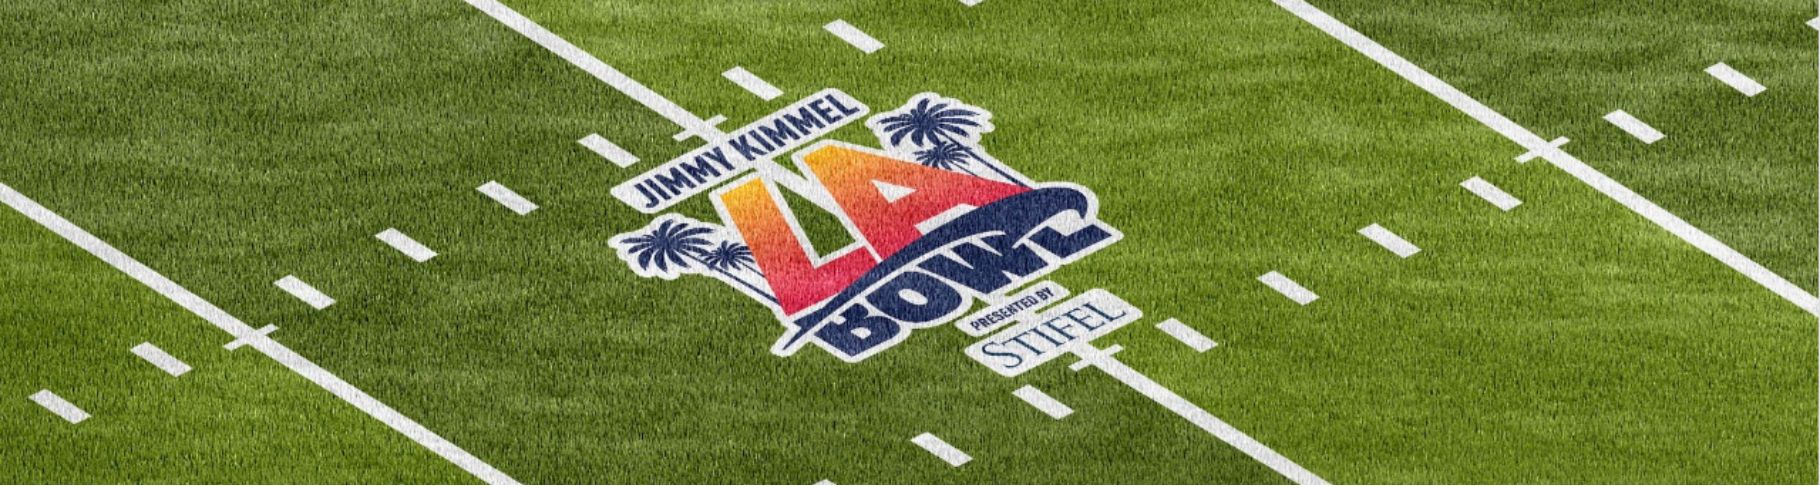 Jimmy Kimmel LA Bowl field